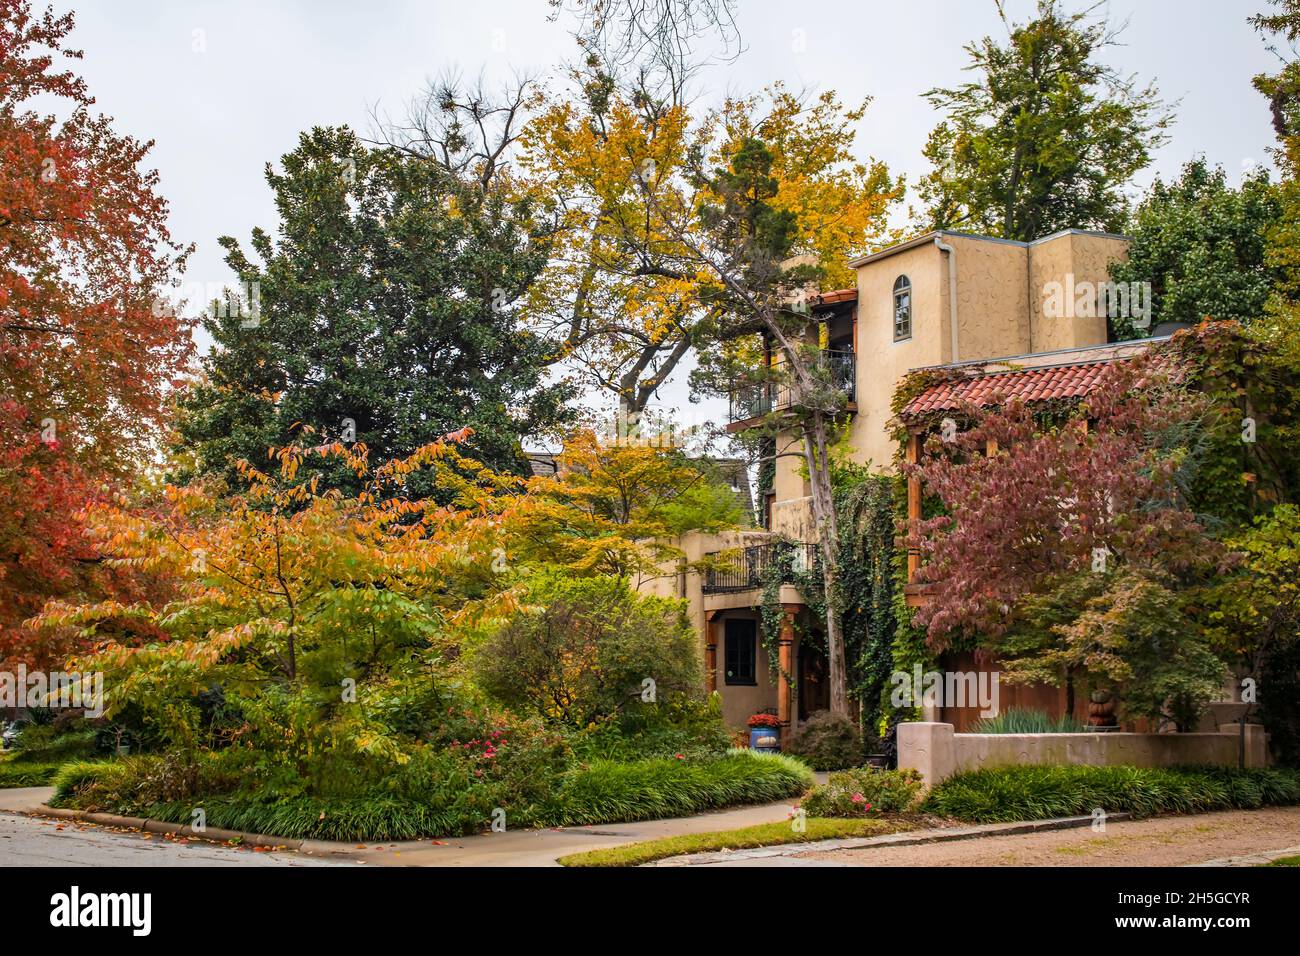 Haus, das wie eine italienische Villa aussieht, mit Balkonen und rotem Ziegeldach mit üppigem Herbstlaub, das an bewölktem Tag Farben färbt - gesättigt Stockfoto